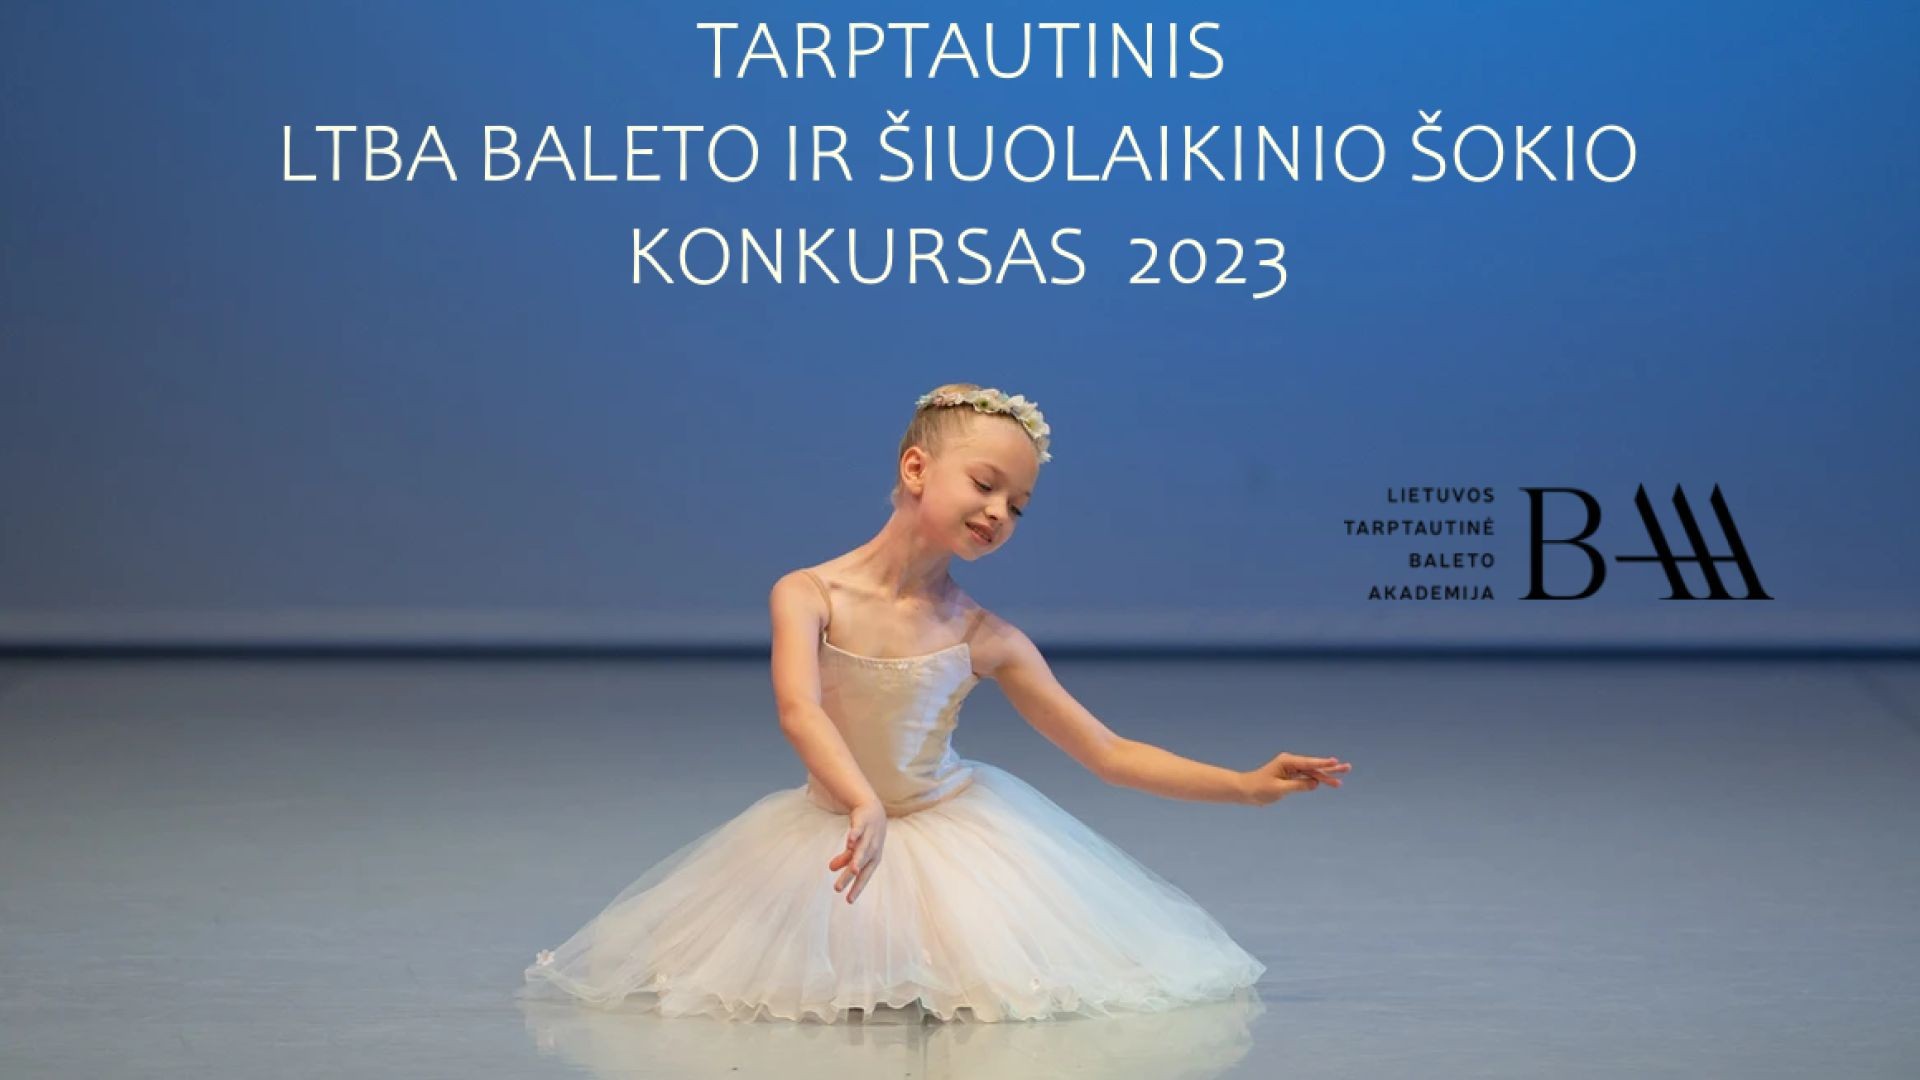 Tarptautinis LTBA baleto ir šiuolaikinio šokio konkursas 2023